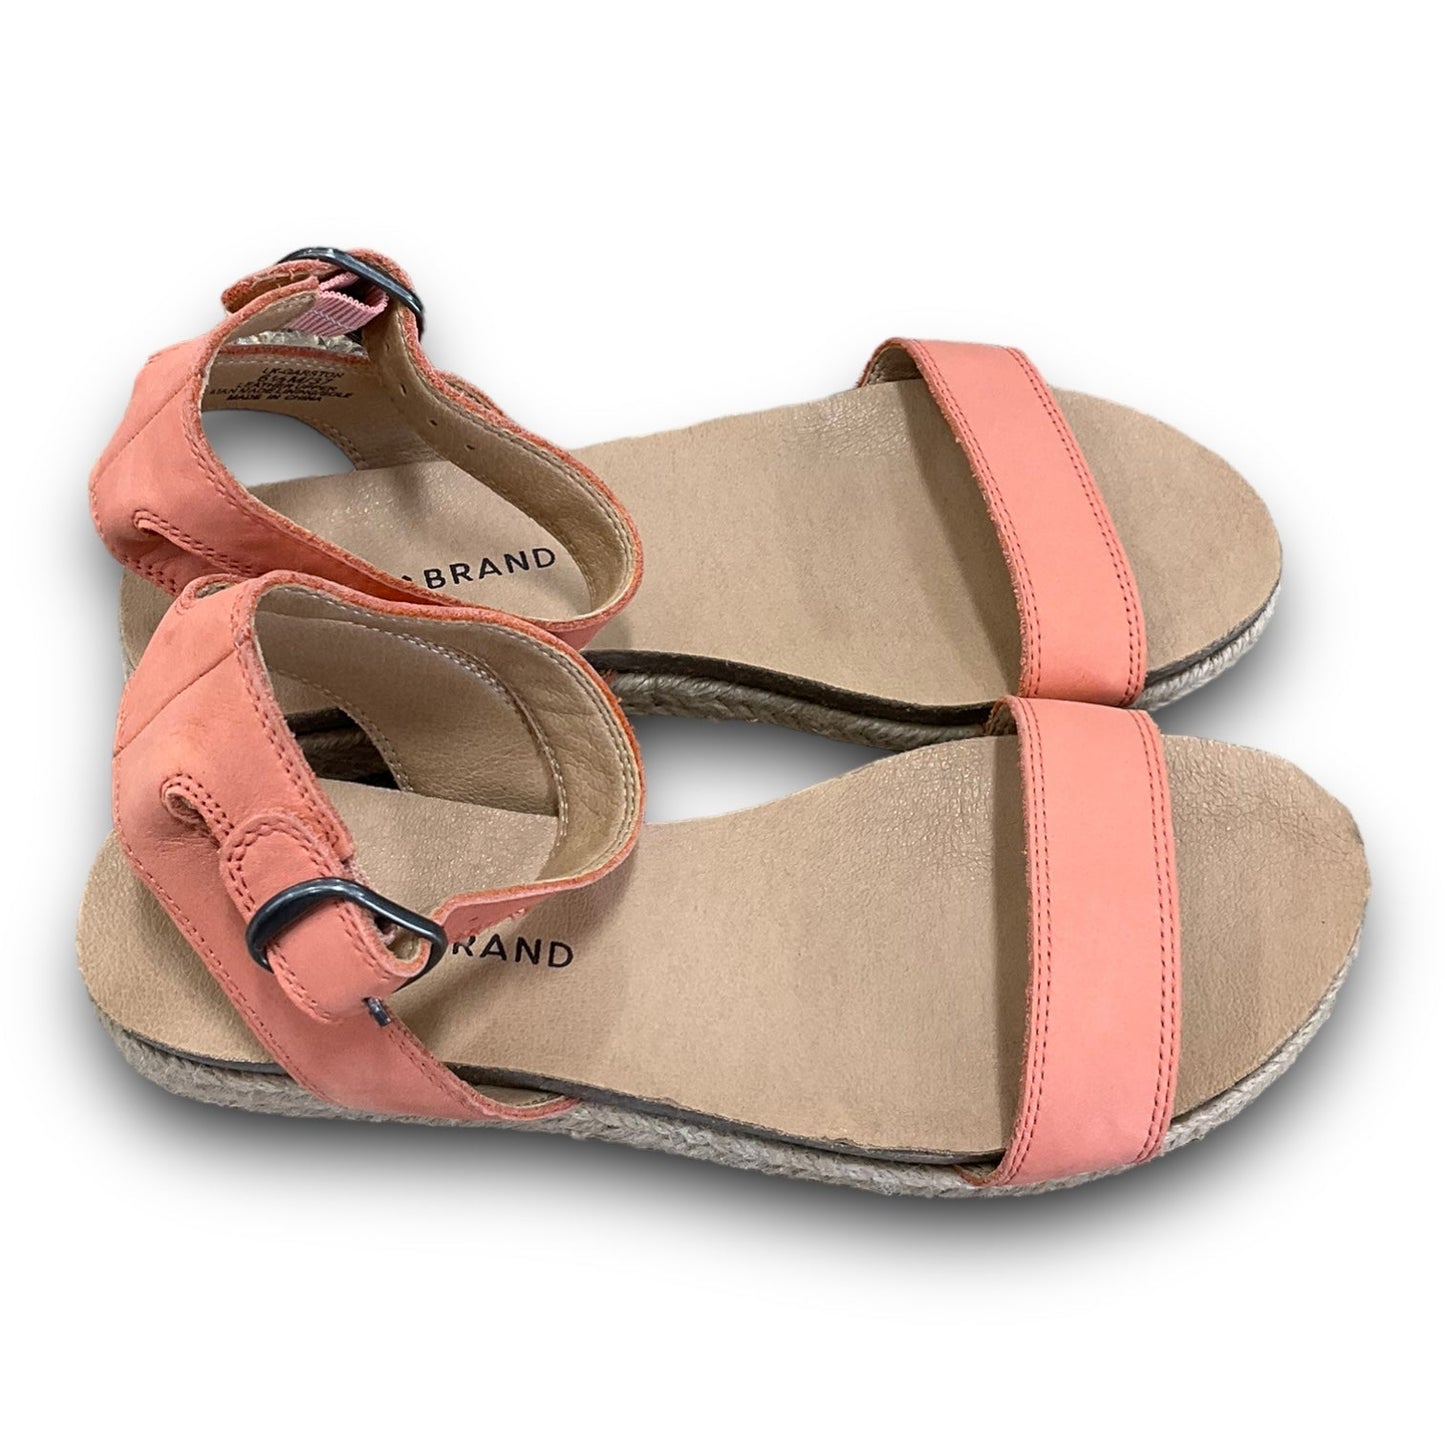 Peach Sandals Flats Lucky Brand, Size 6.5